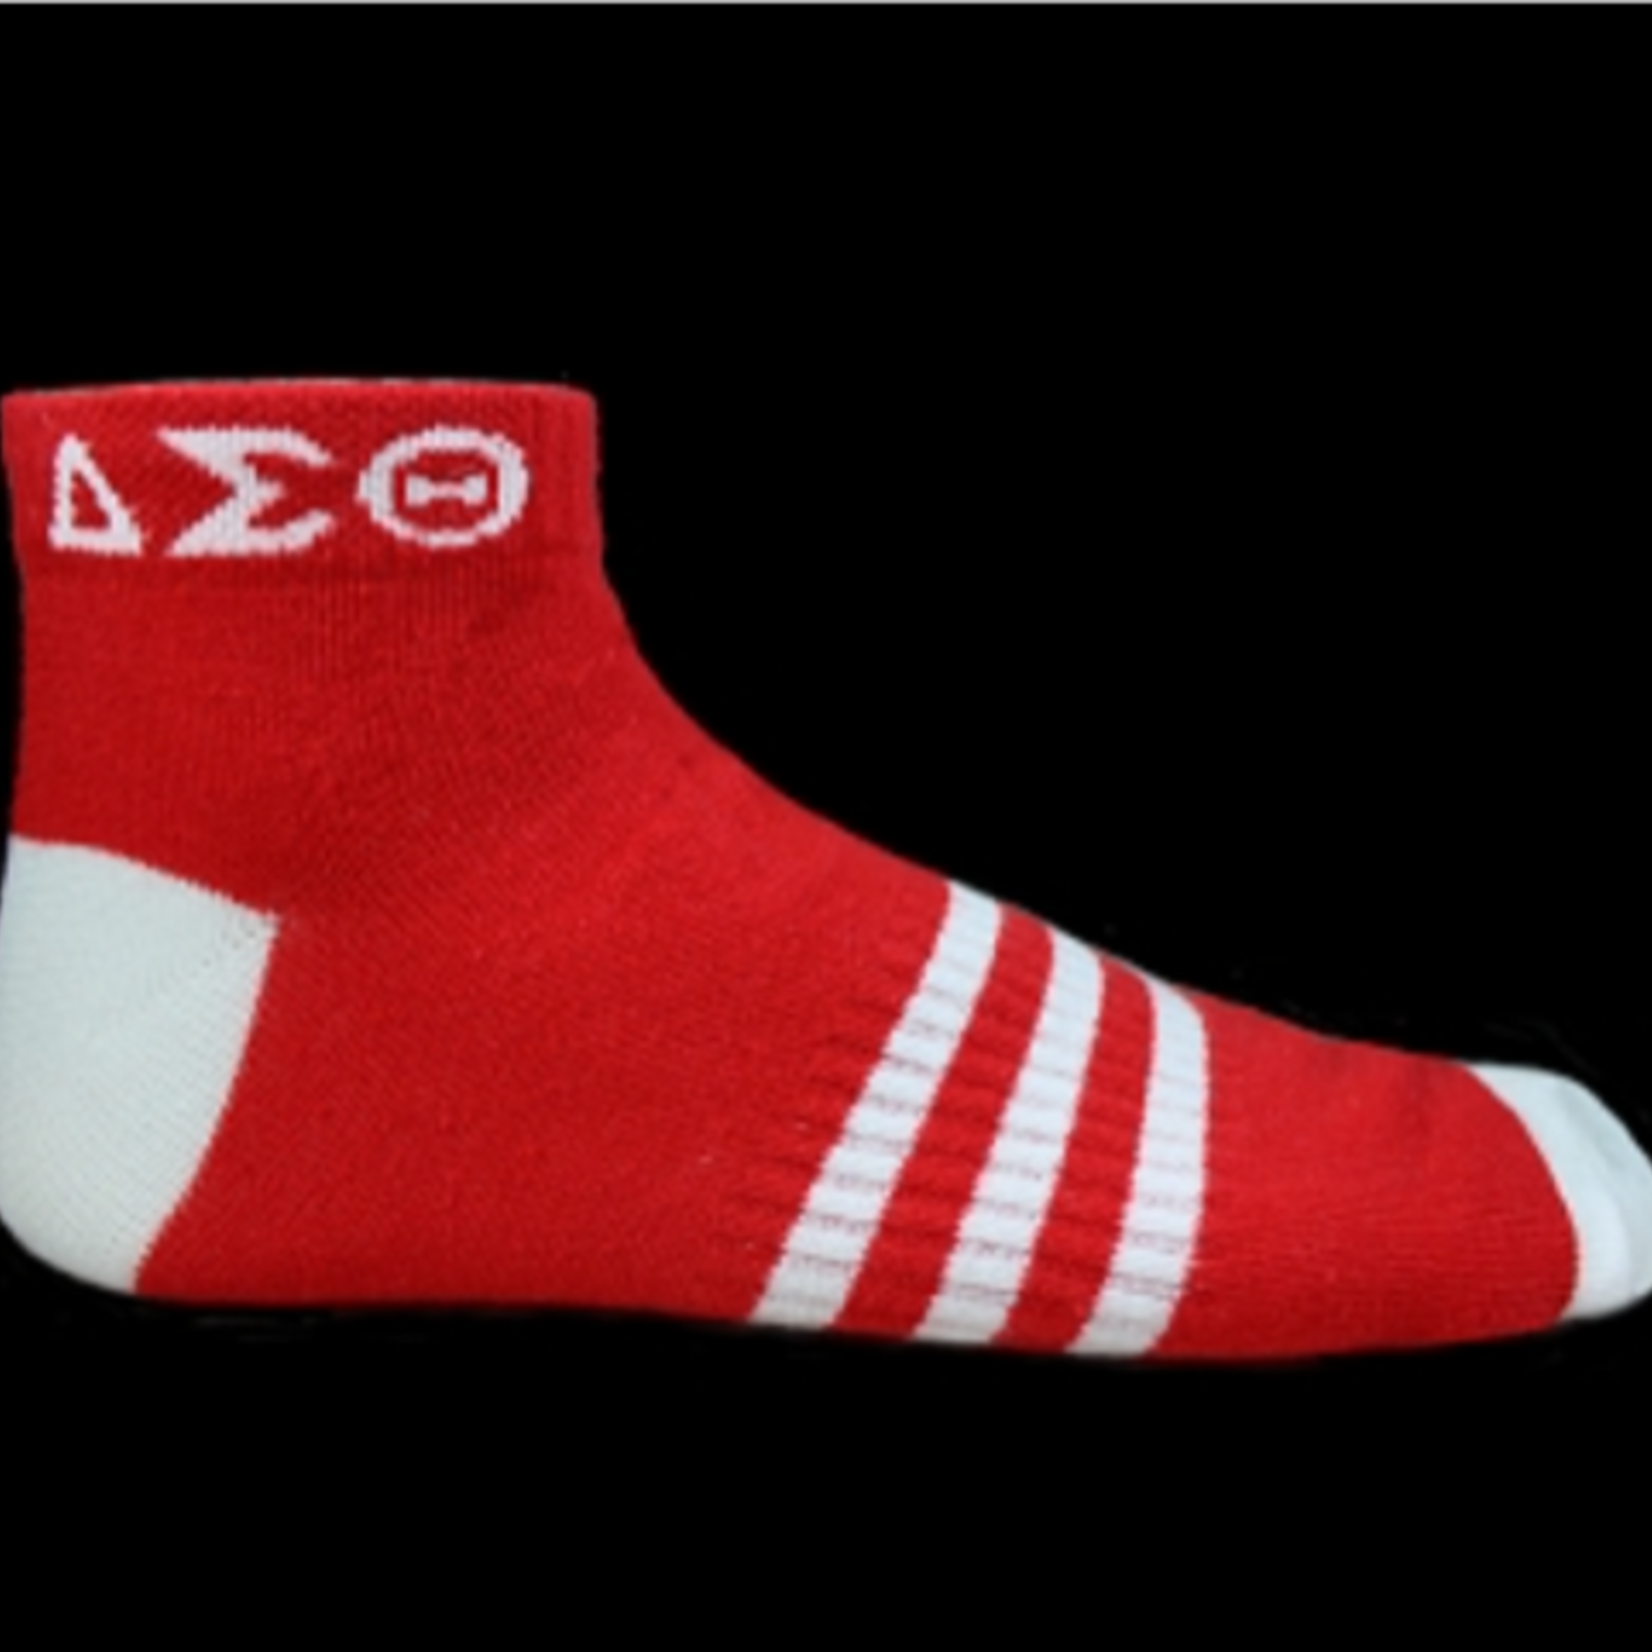 ΔΣΘ Red & White Ankle Socks